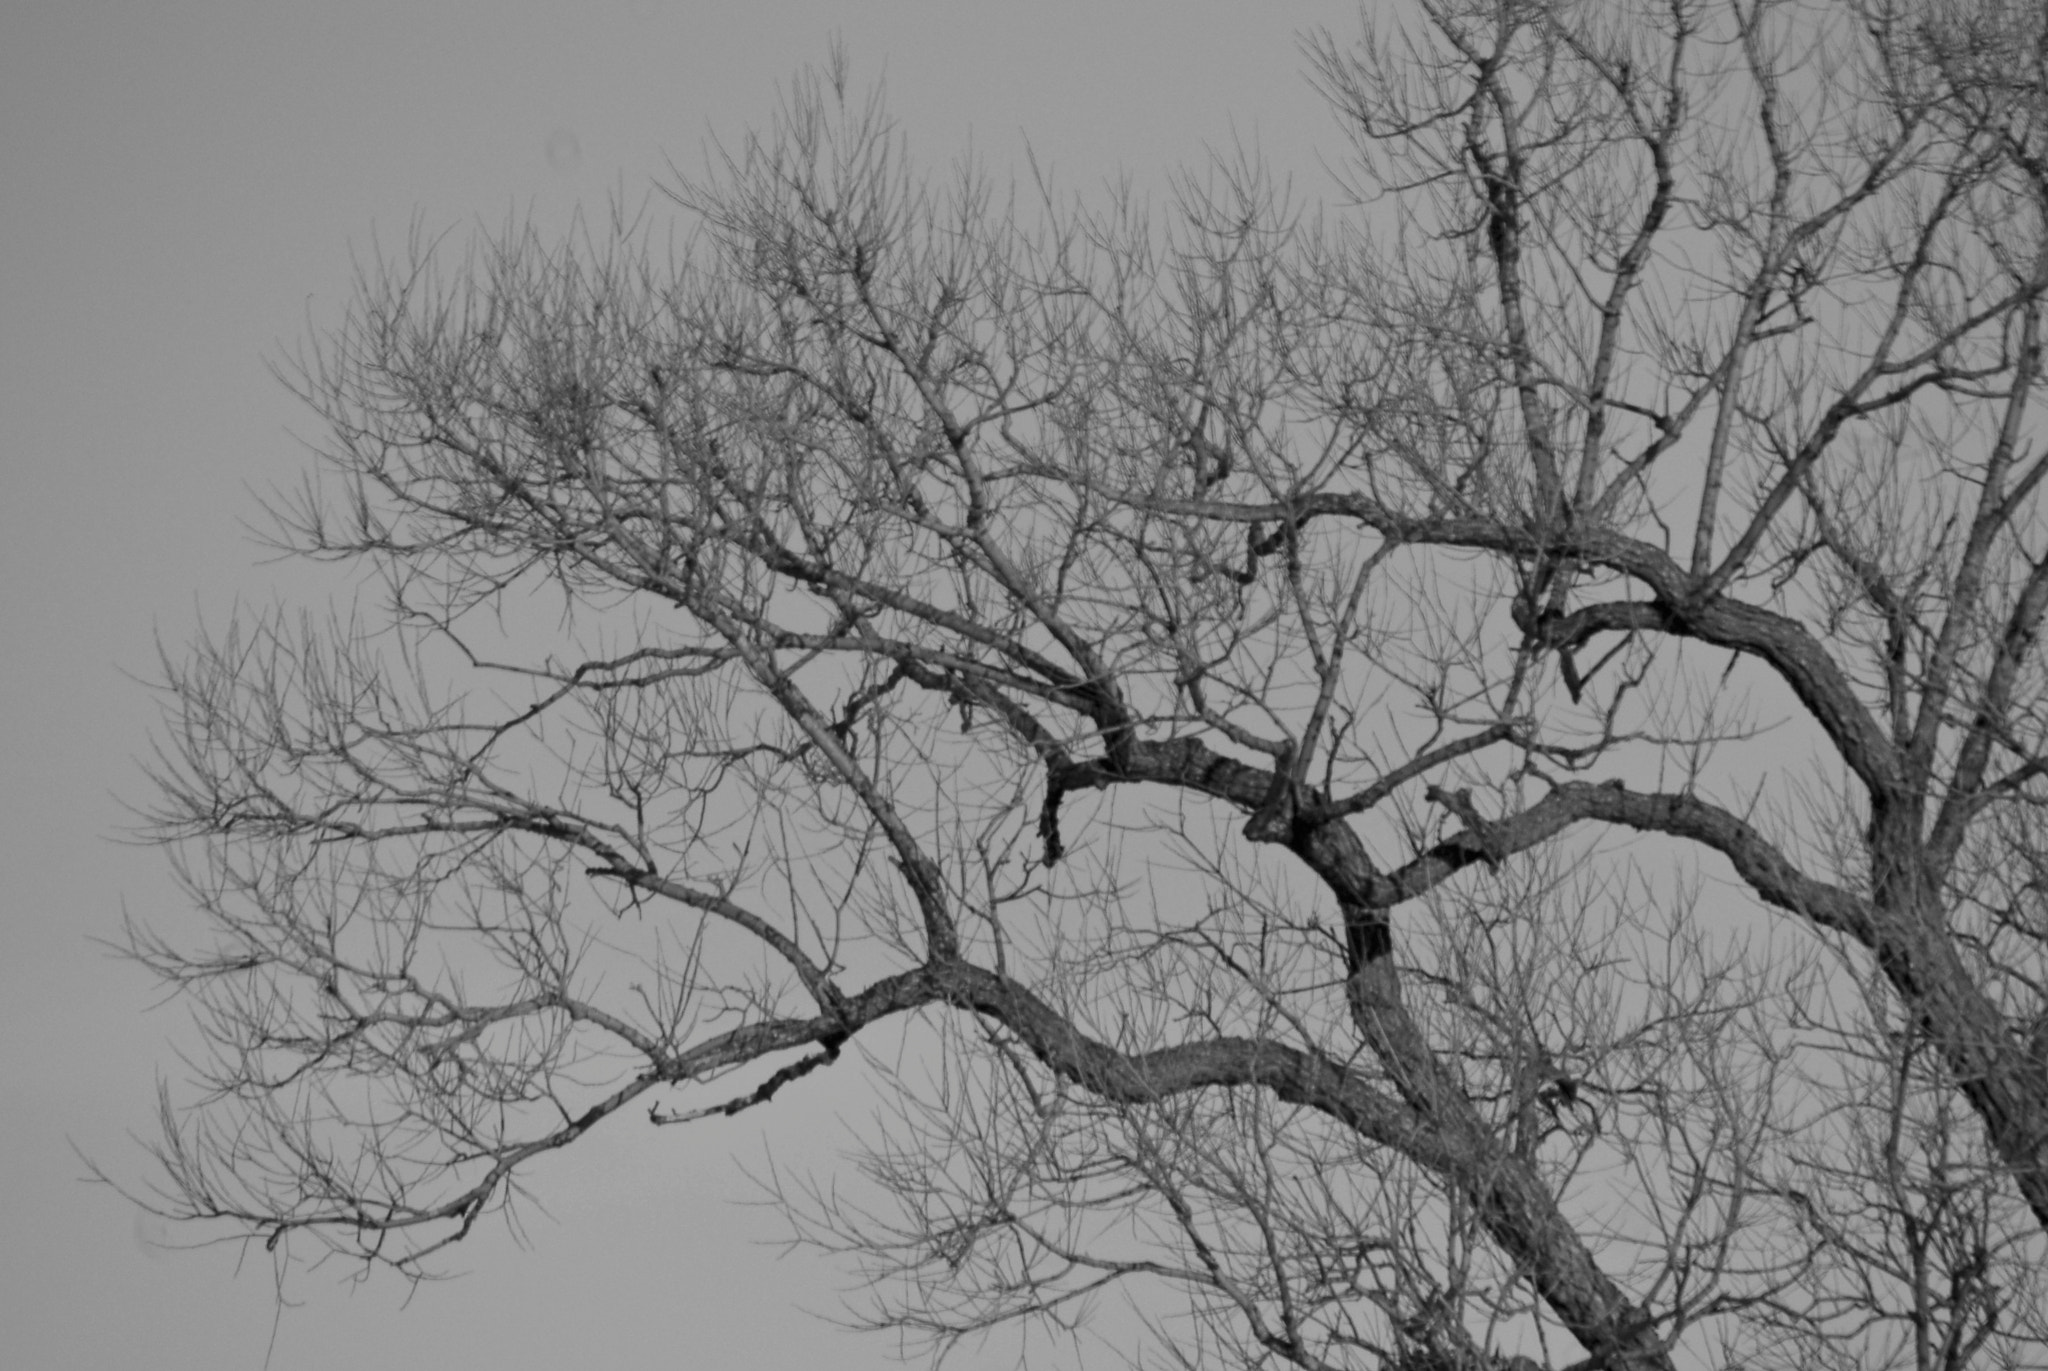 Nikon D200 + AF Nikkor 50mm f/1.8 sample photo. Winter tree photography